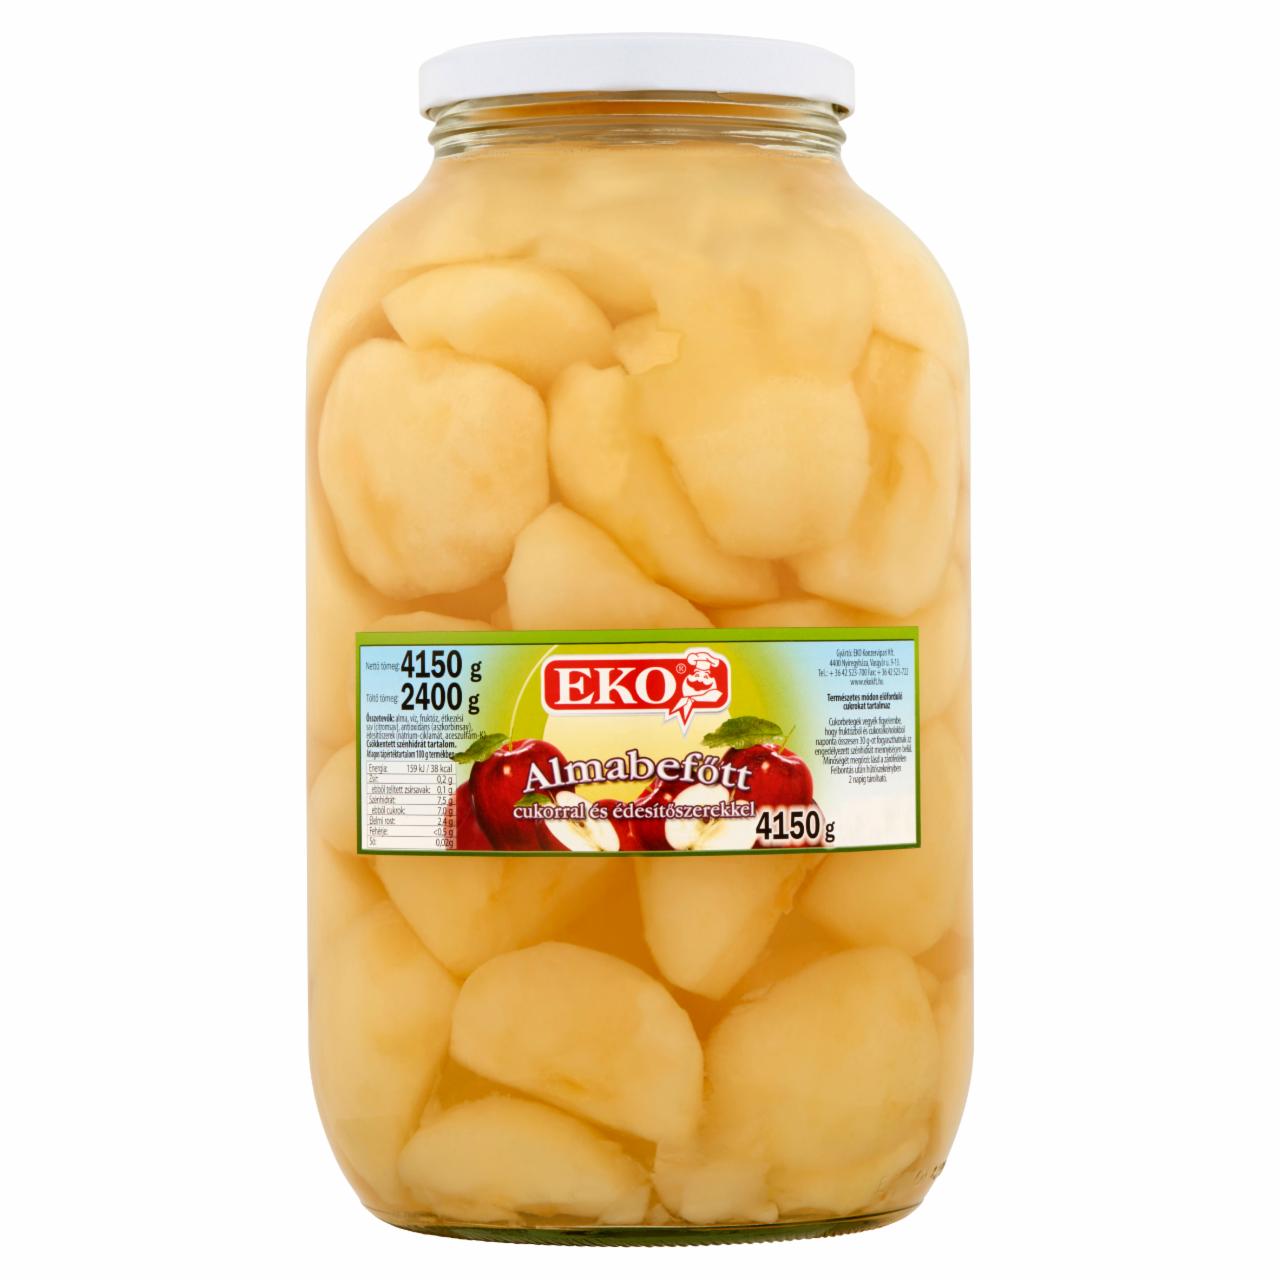 Képek - Eko almabefőtt cukorral és édesítőszerekkel 4150 g